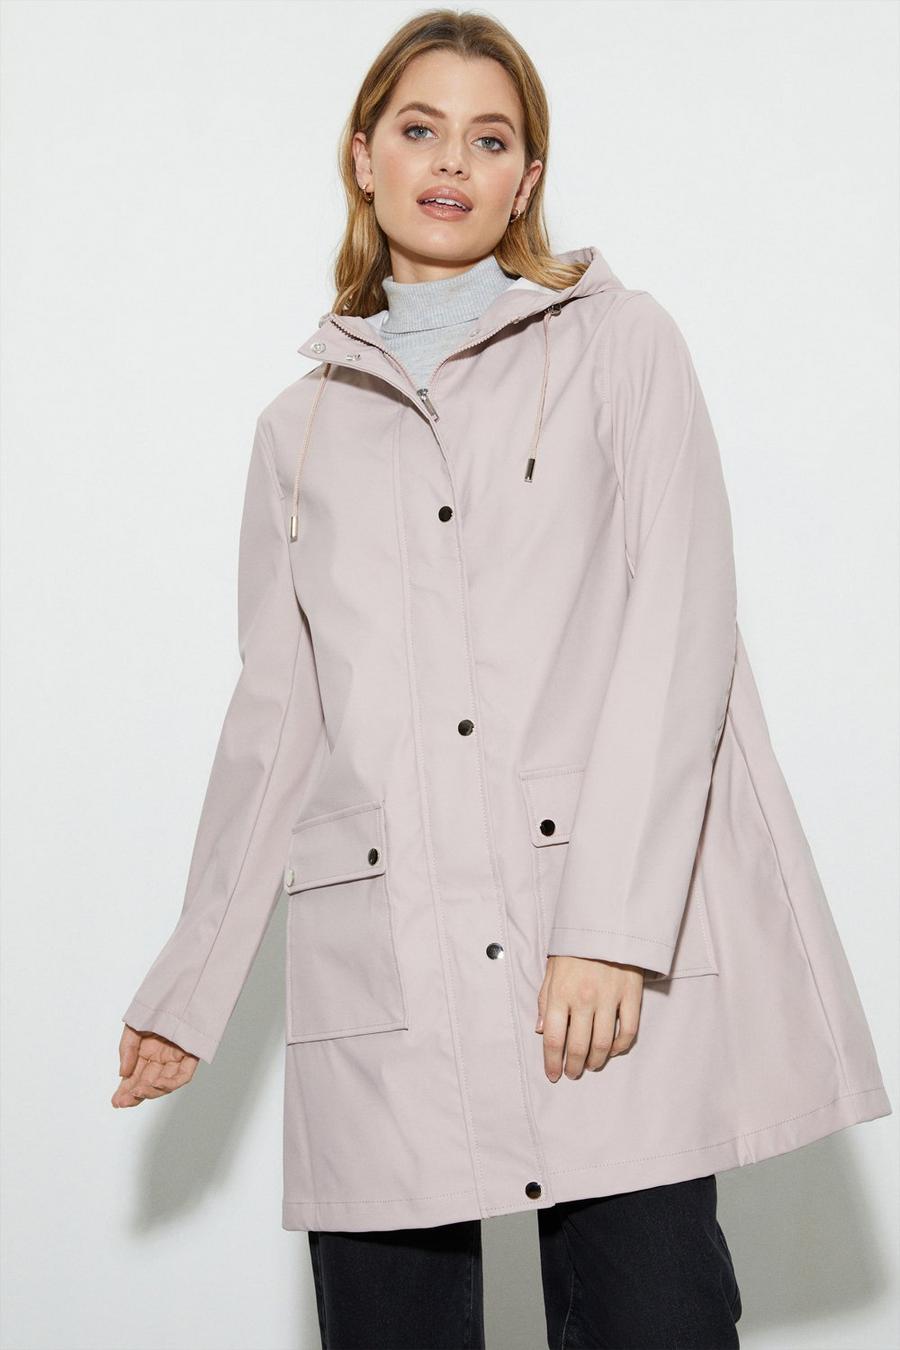 A-Line Fashion Rain Jacket